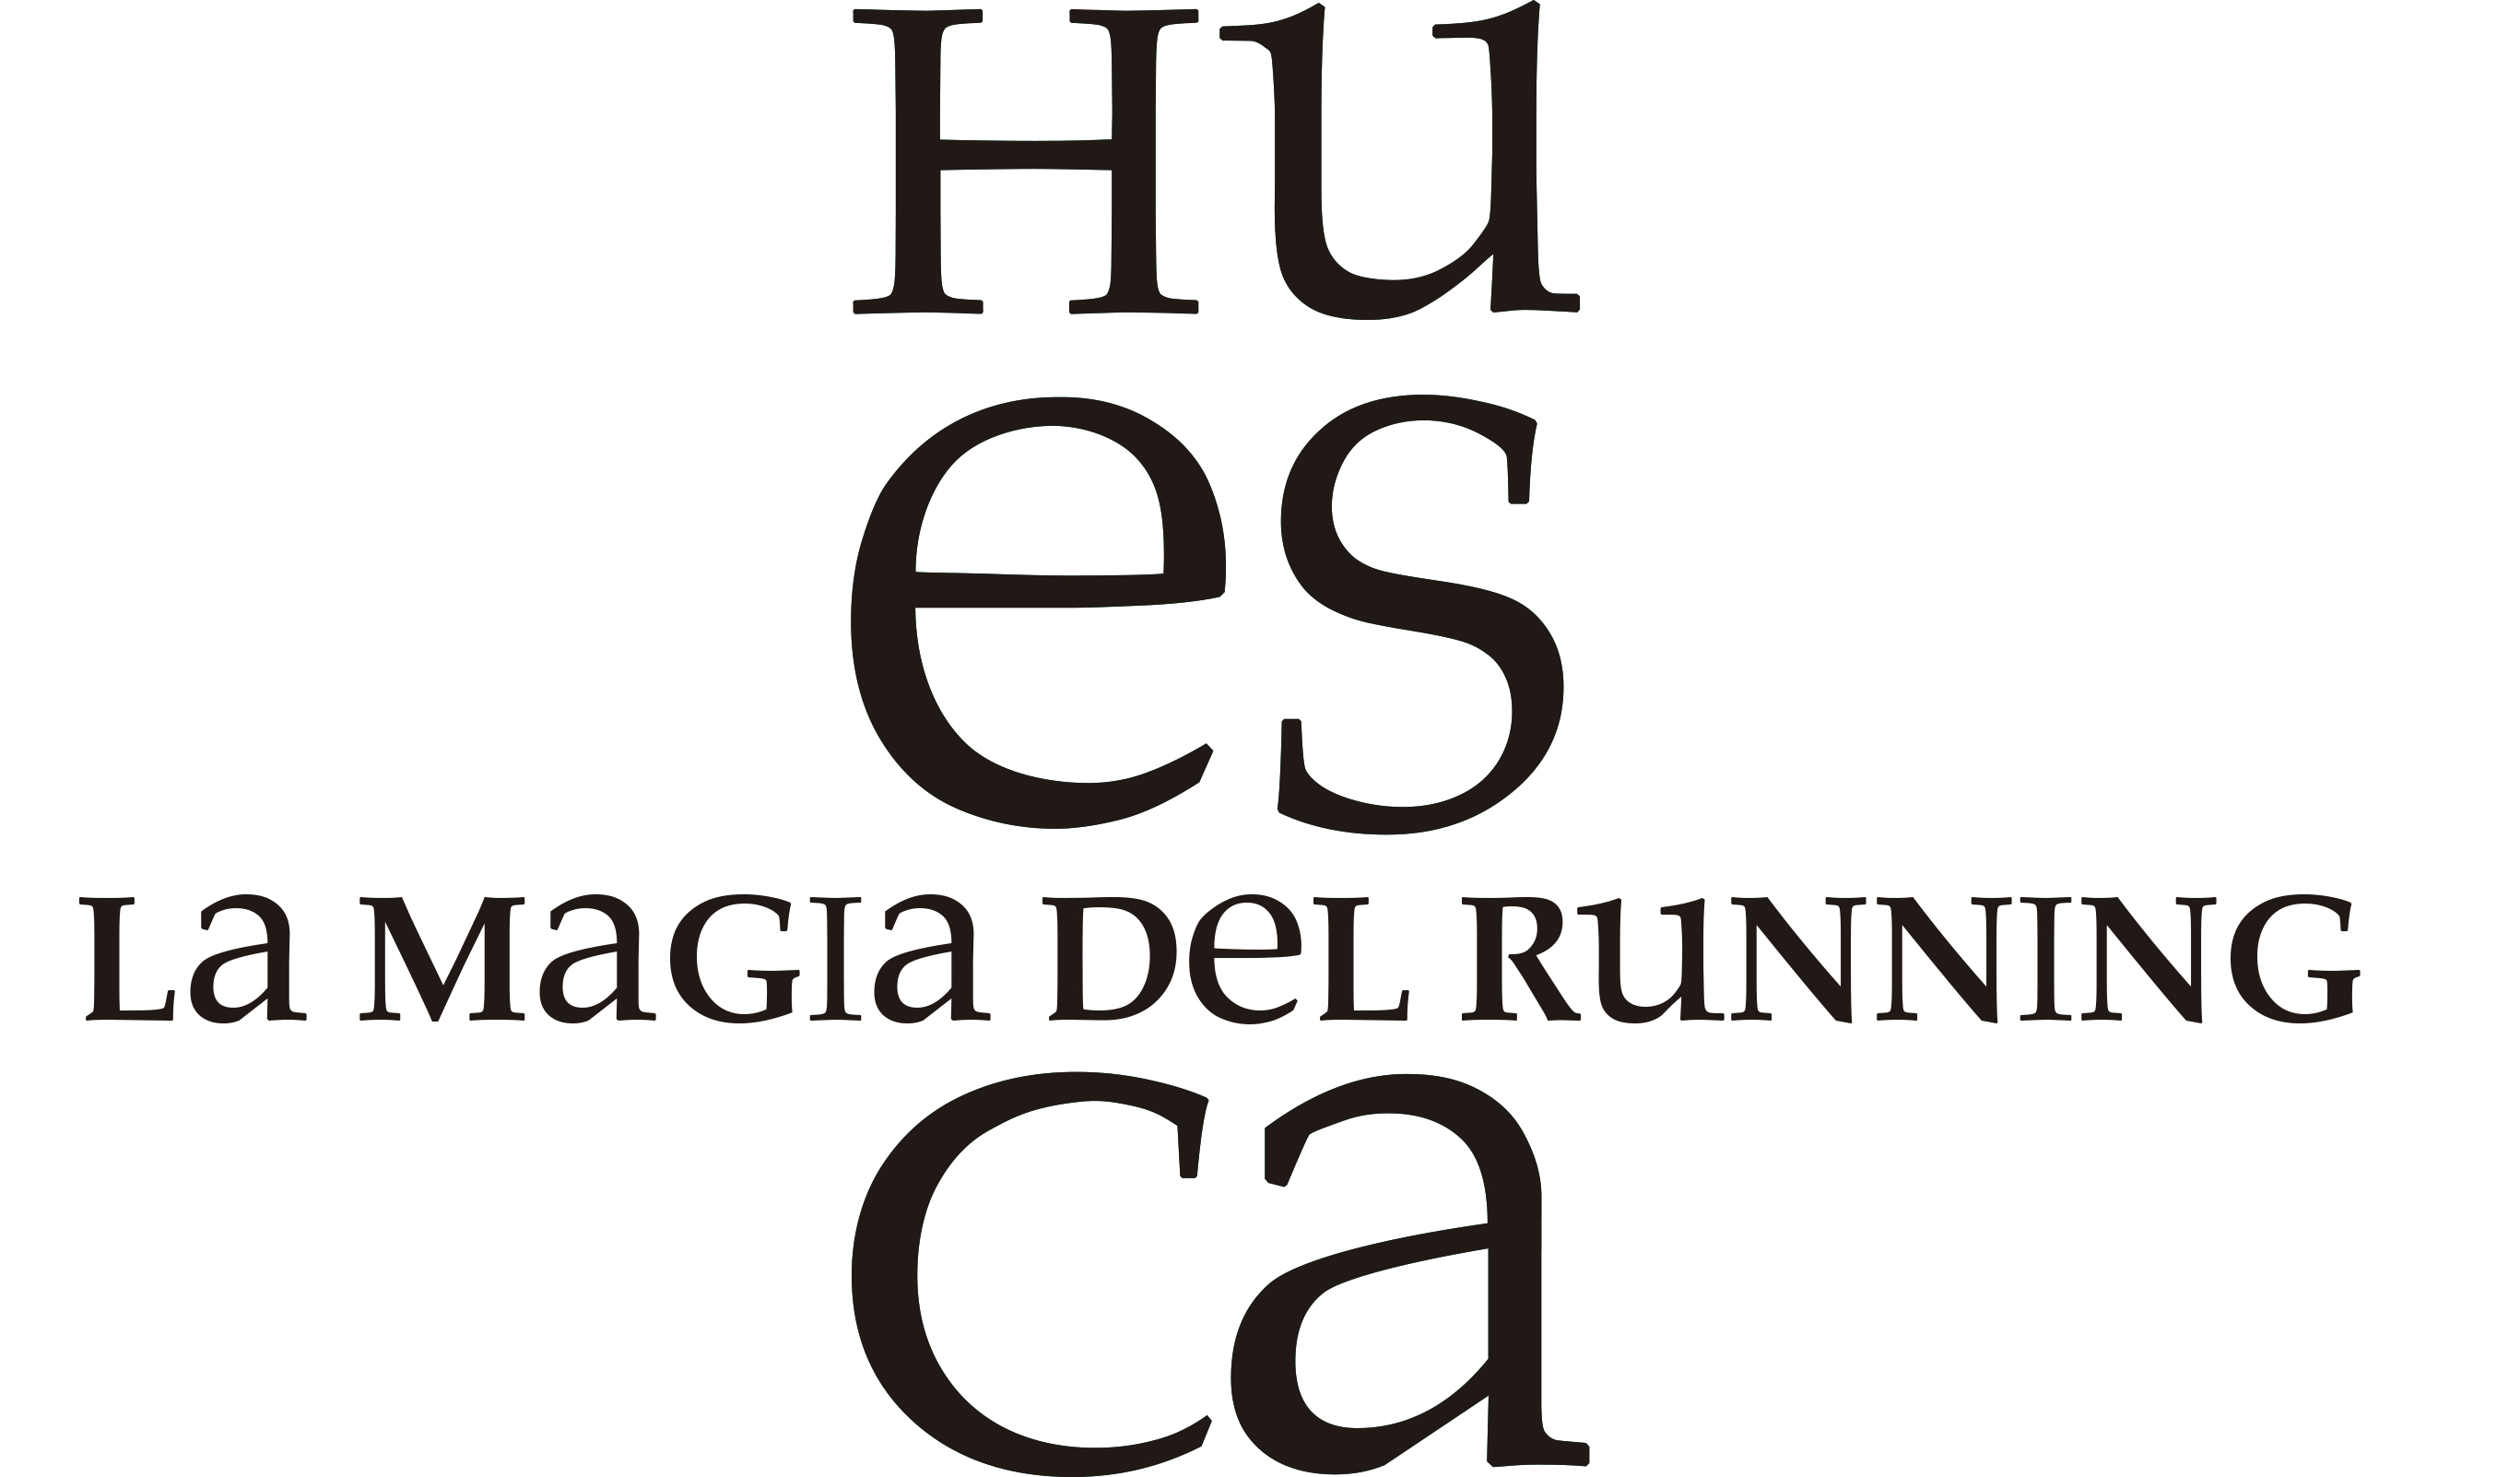 Huesca La Magia del Running